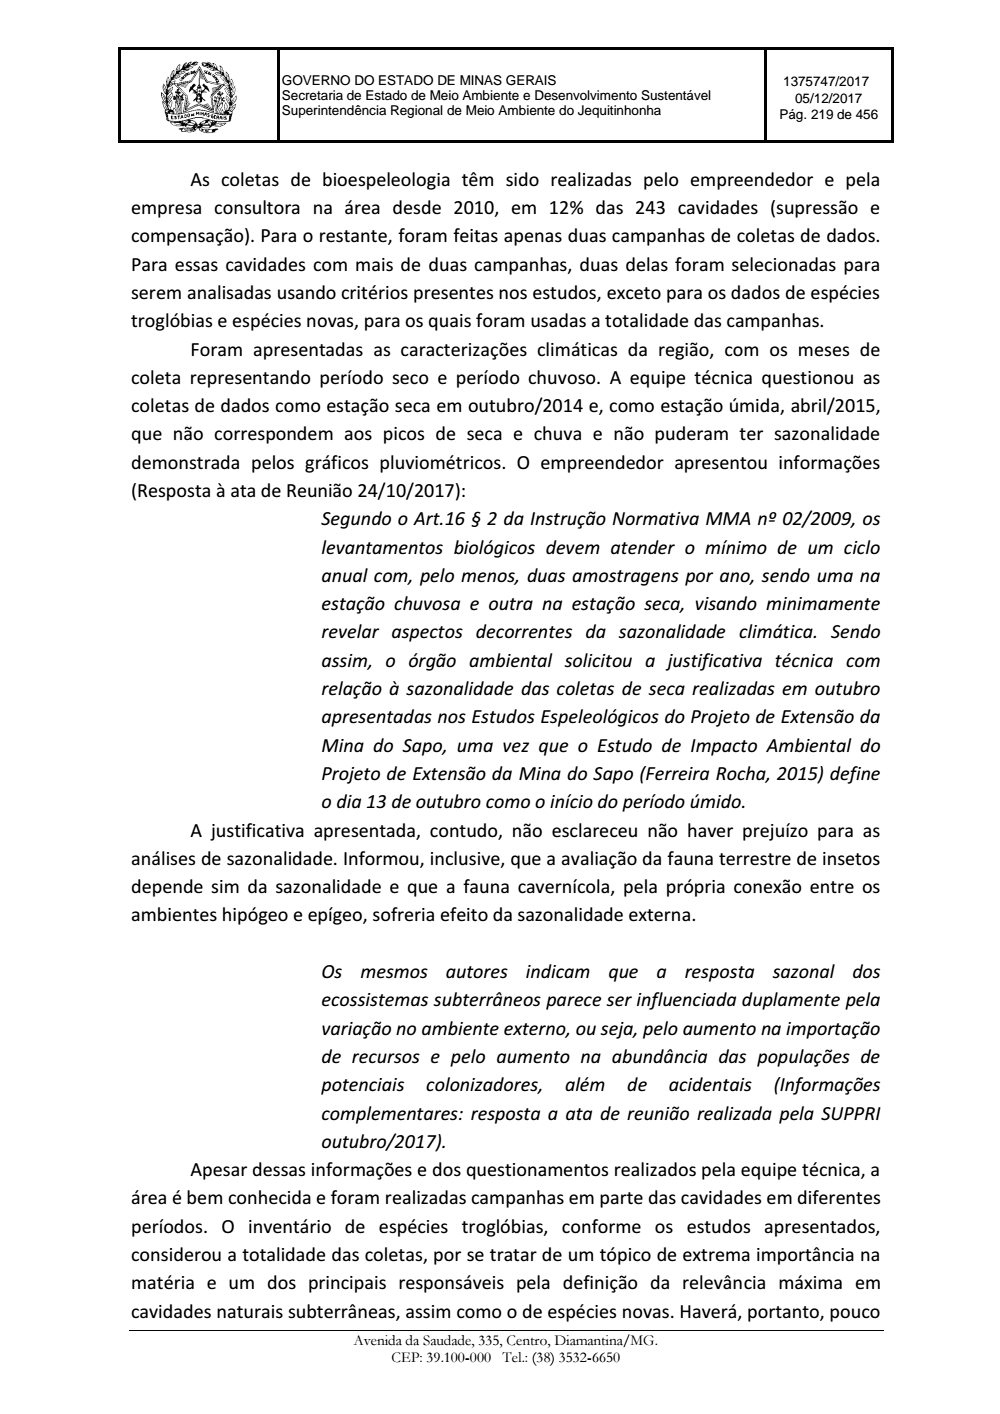 Page 219 from Parecer único da Secretaria de estado de Meio Ambiente e Desenvolvimento Sustentável (SEMAD)